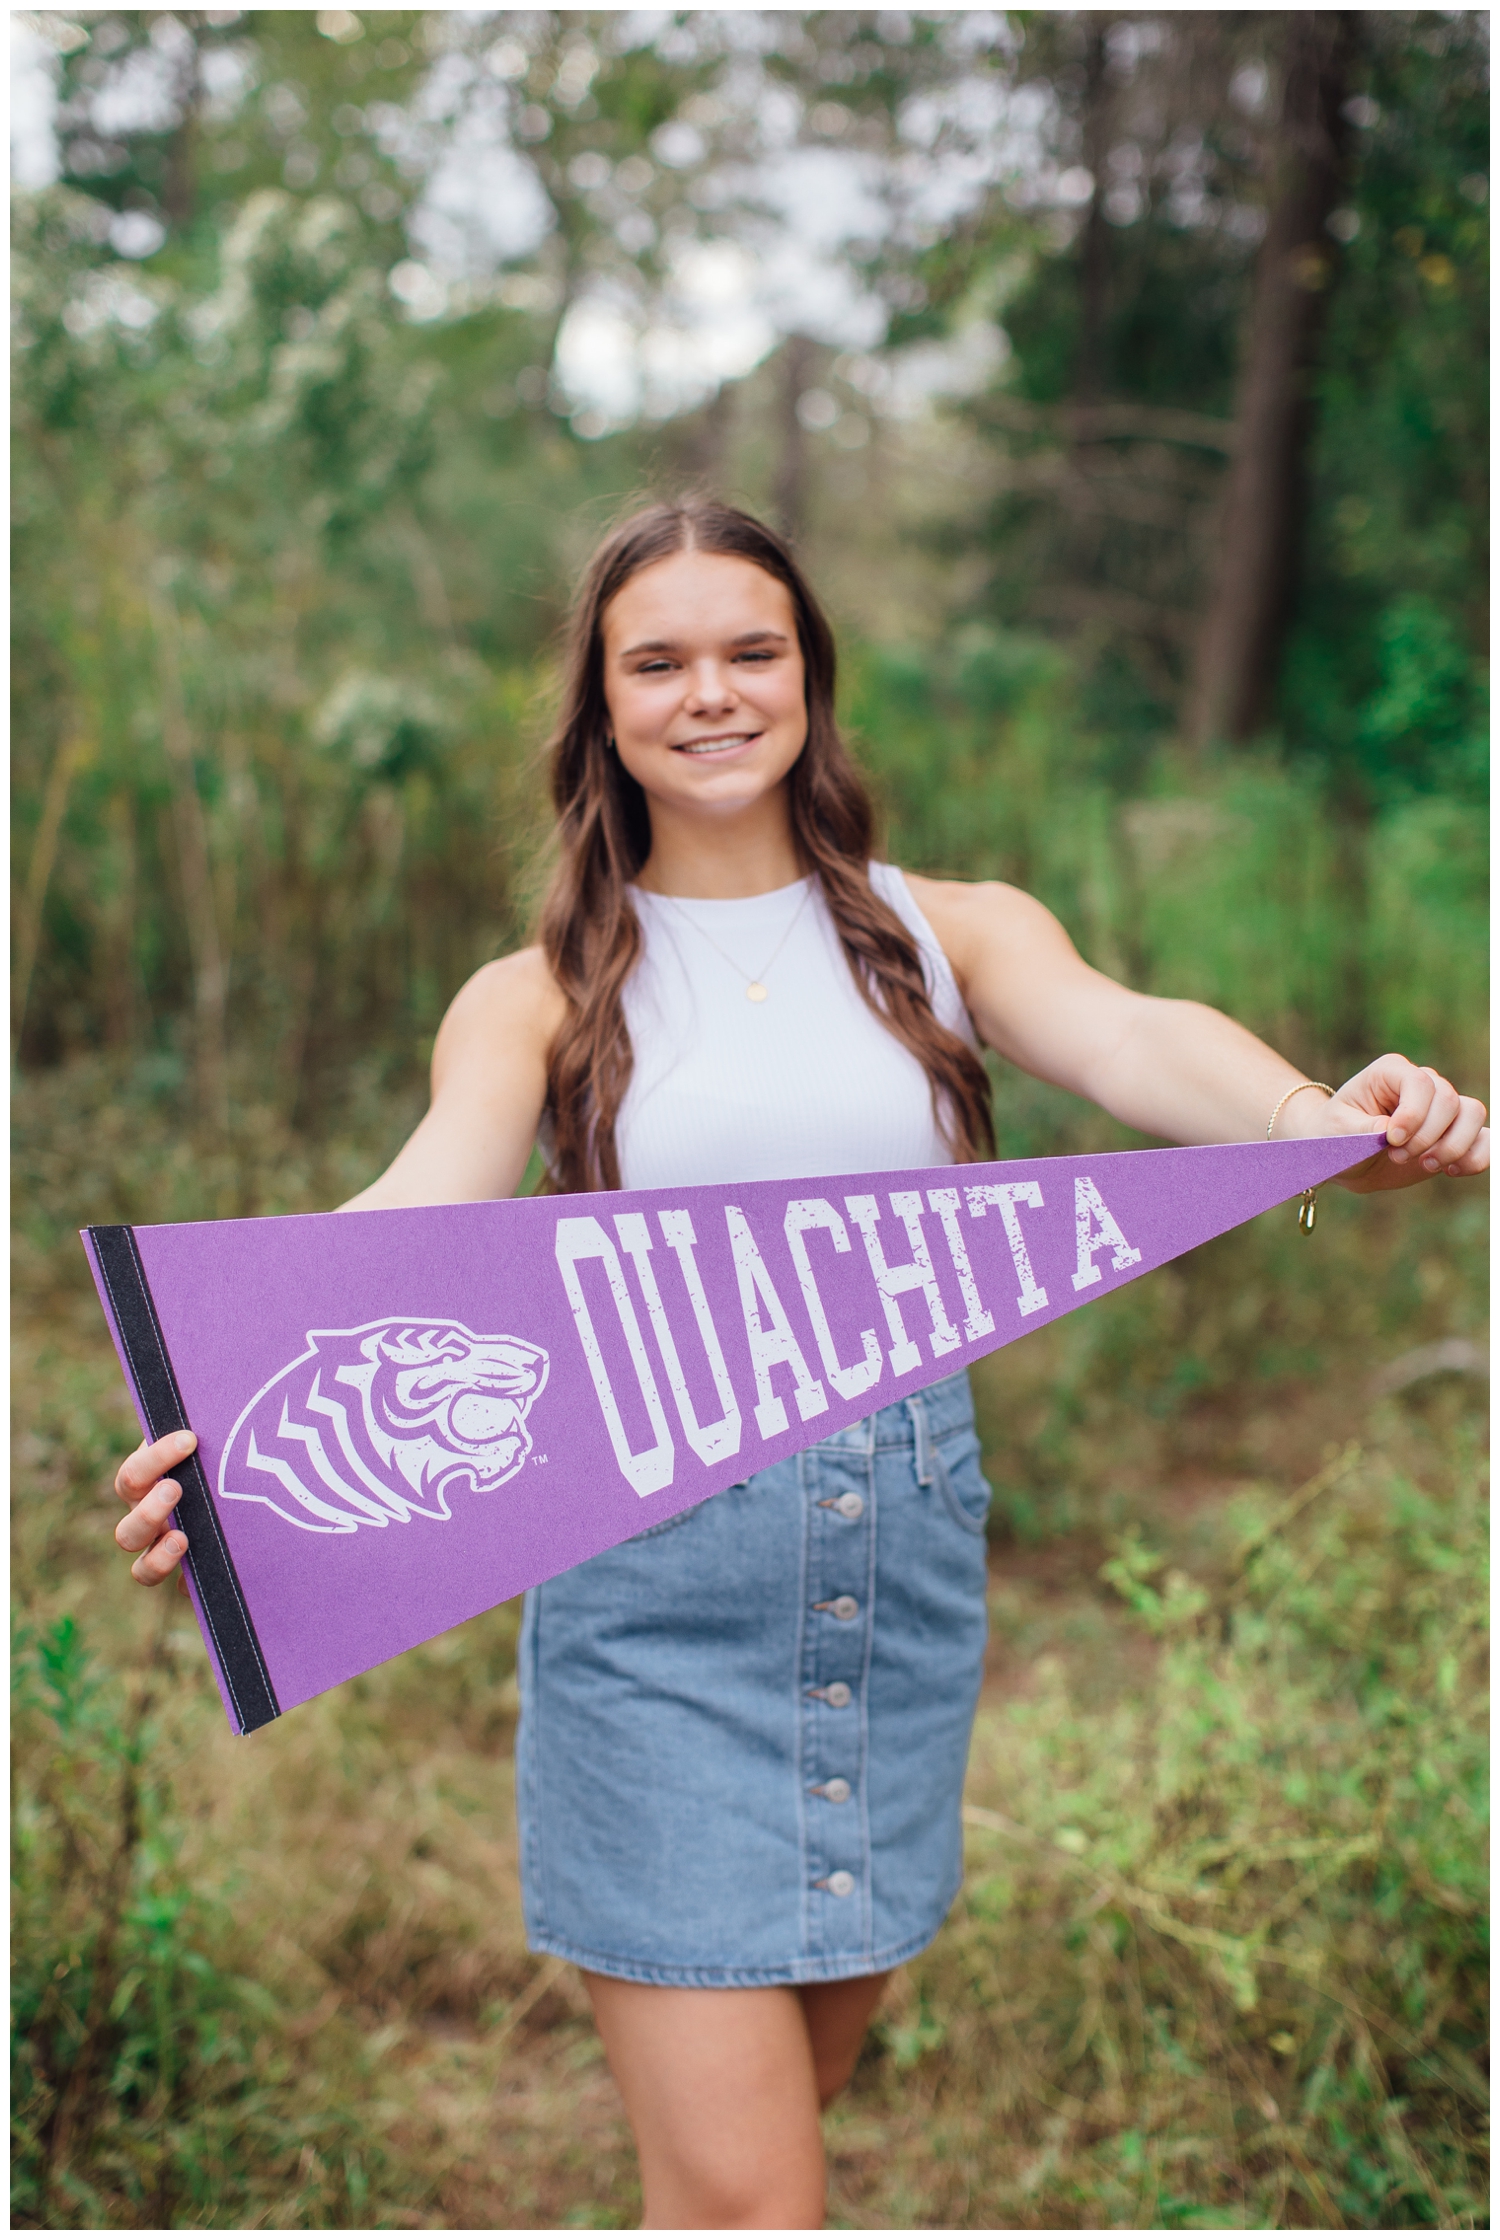 senior girl holding purple Ouachita banner in field at Houston Arboretum